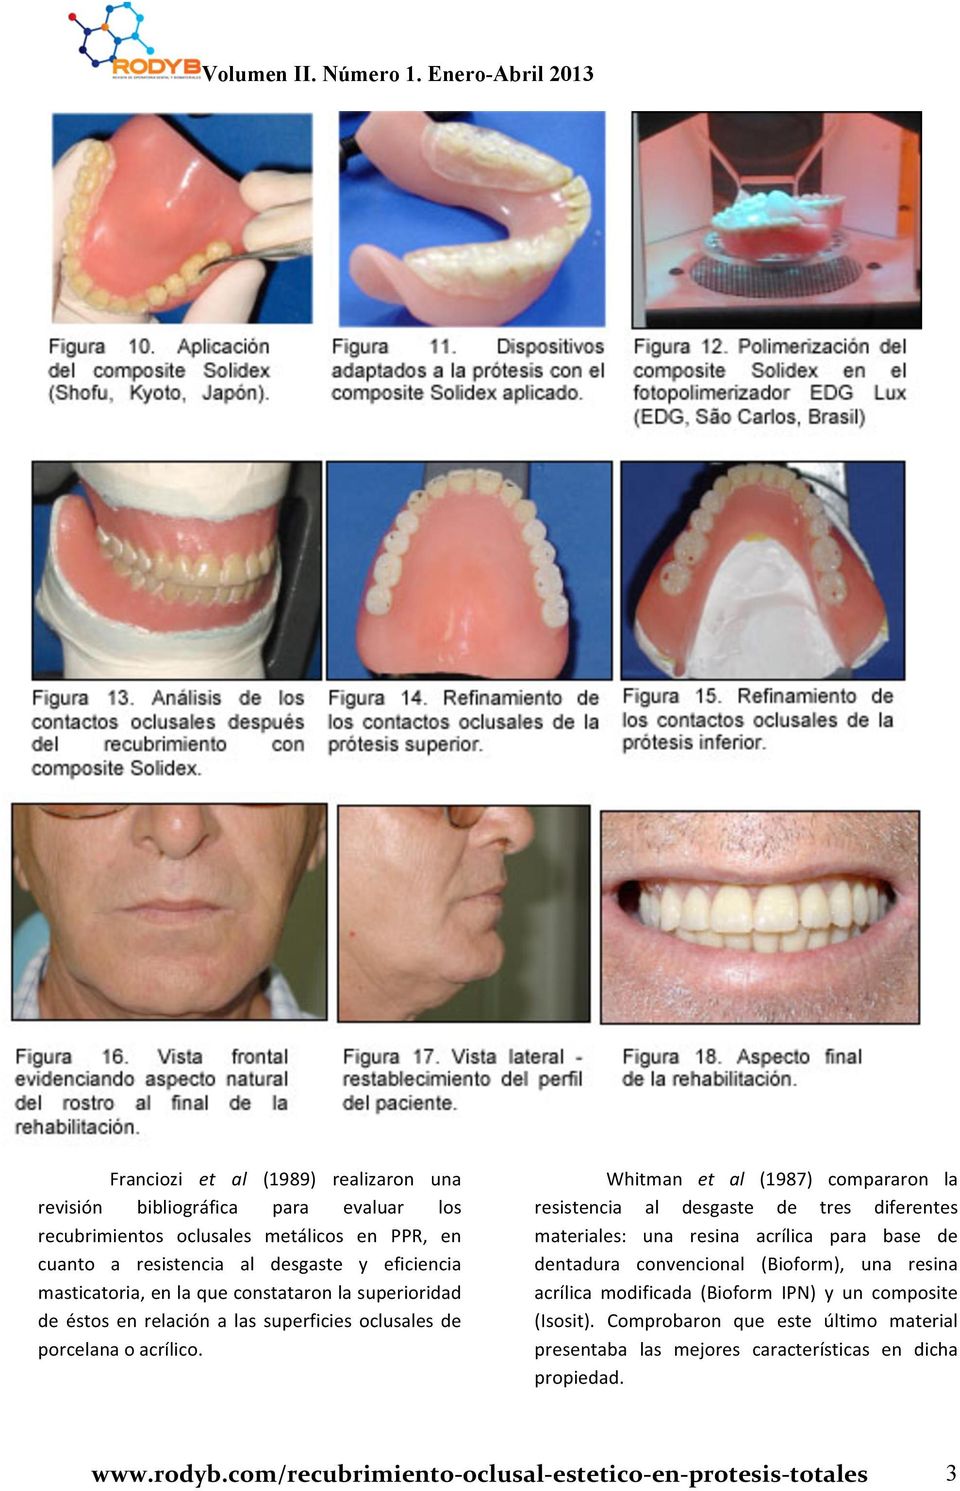 Whitman et al (1987) compararon la resistencia al desgaste de tres diferentes materiales: una resina acrílica para base de dentadura convencional